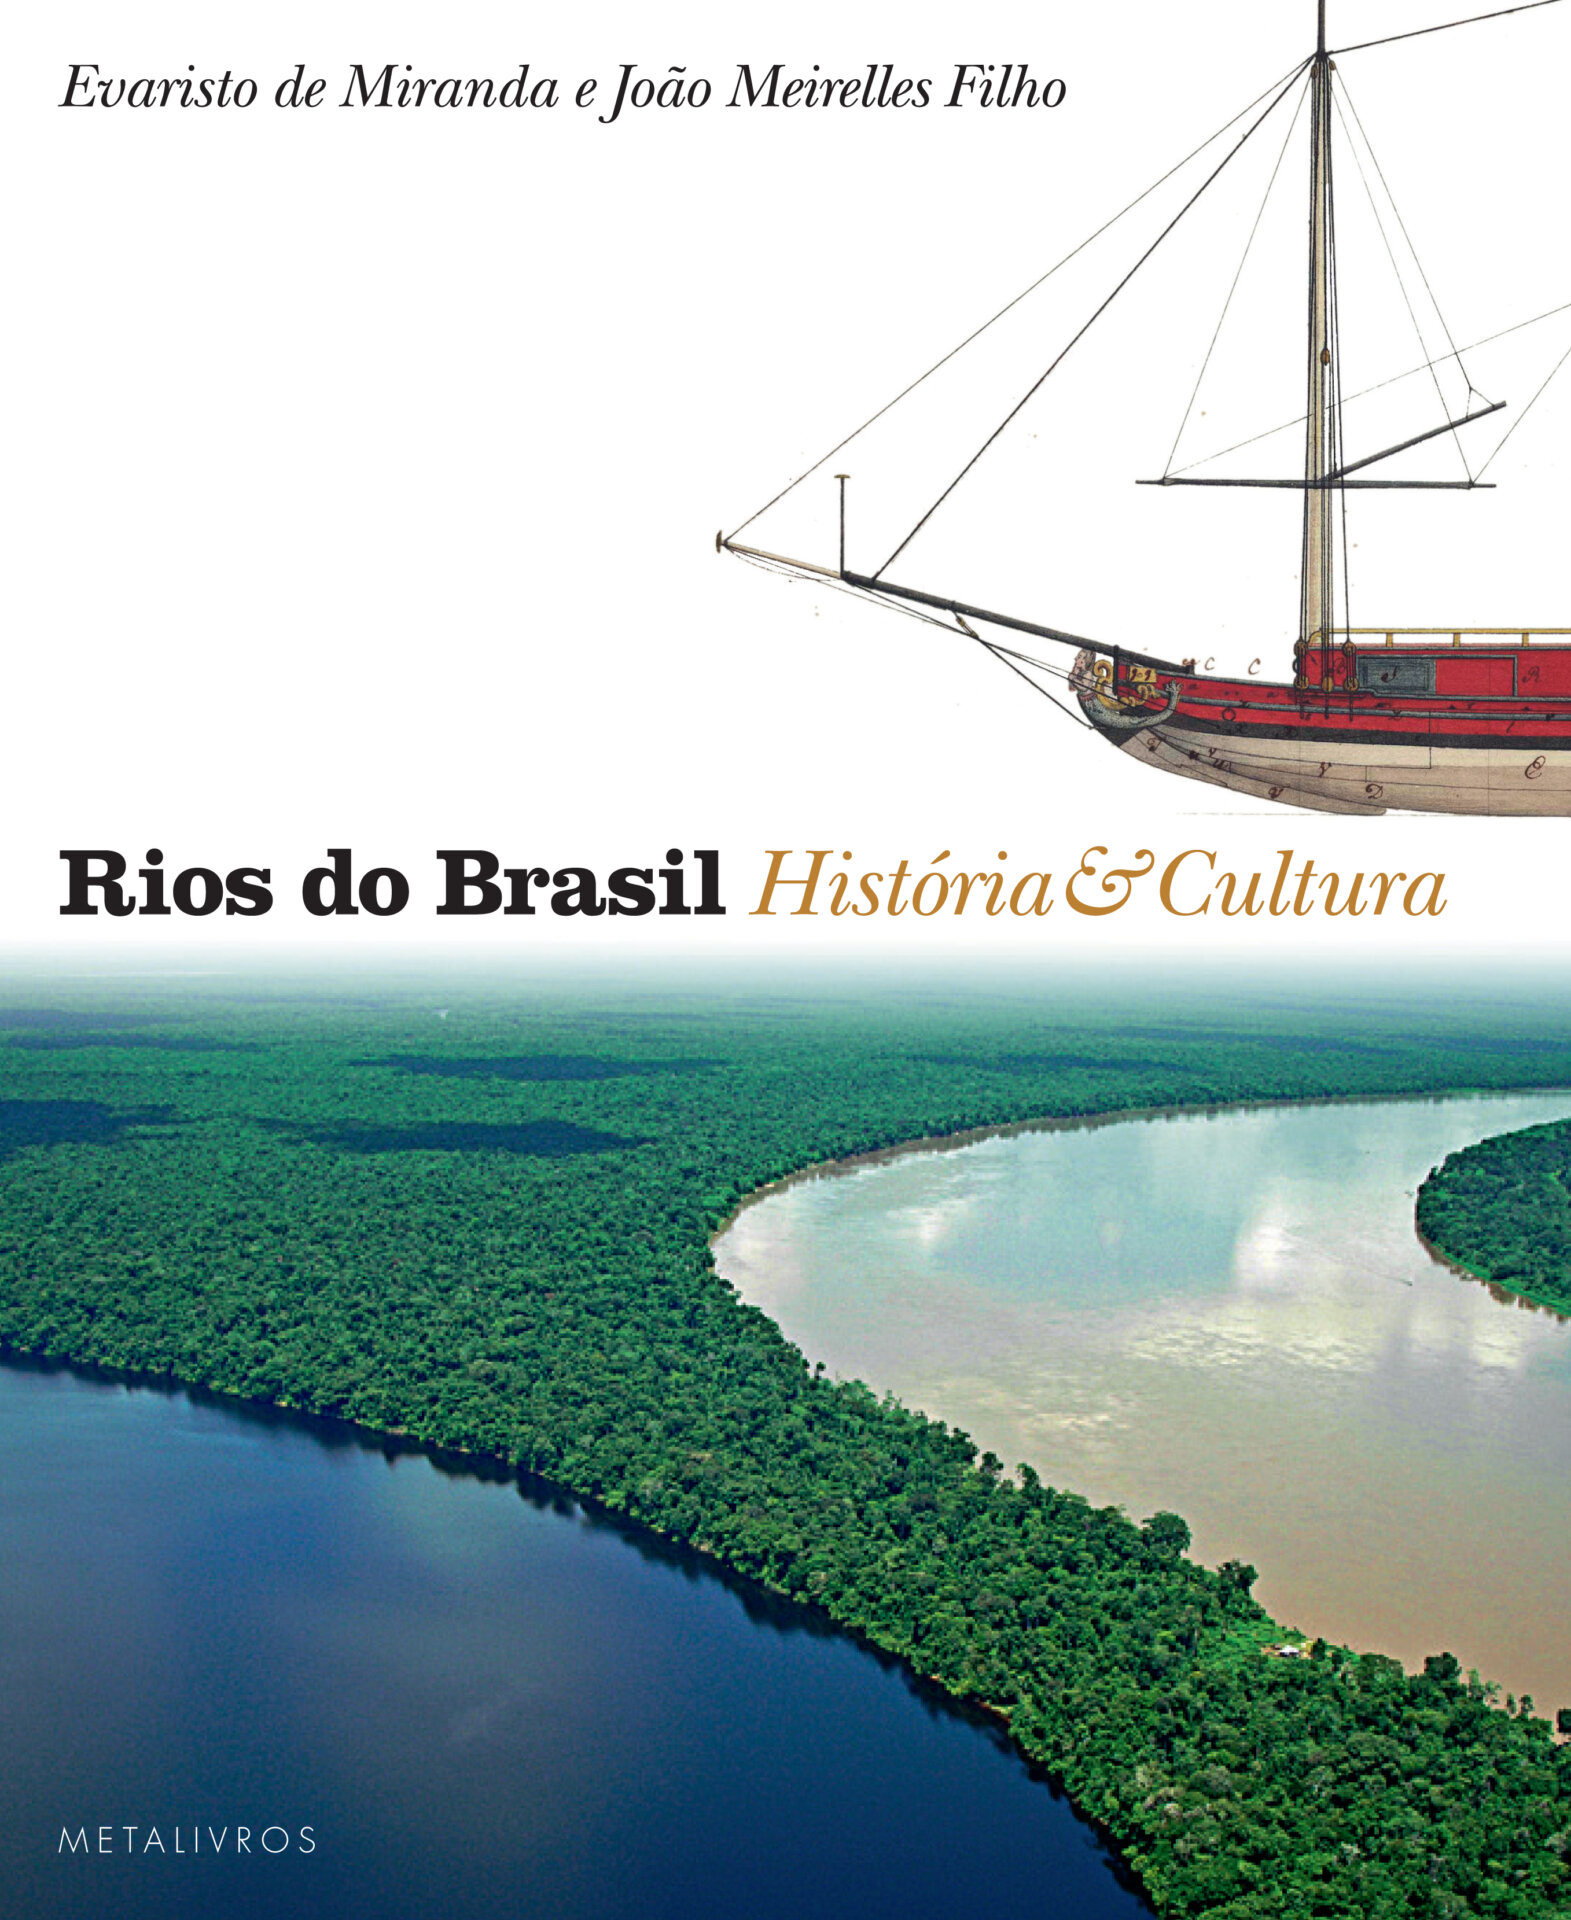 Livro Rios do Brasil Historia & Cultura será lançado em Belém, dia 3 de maio